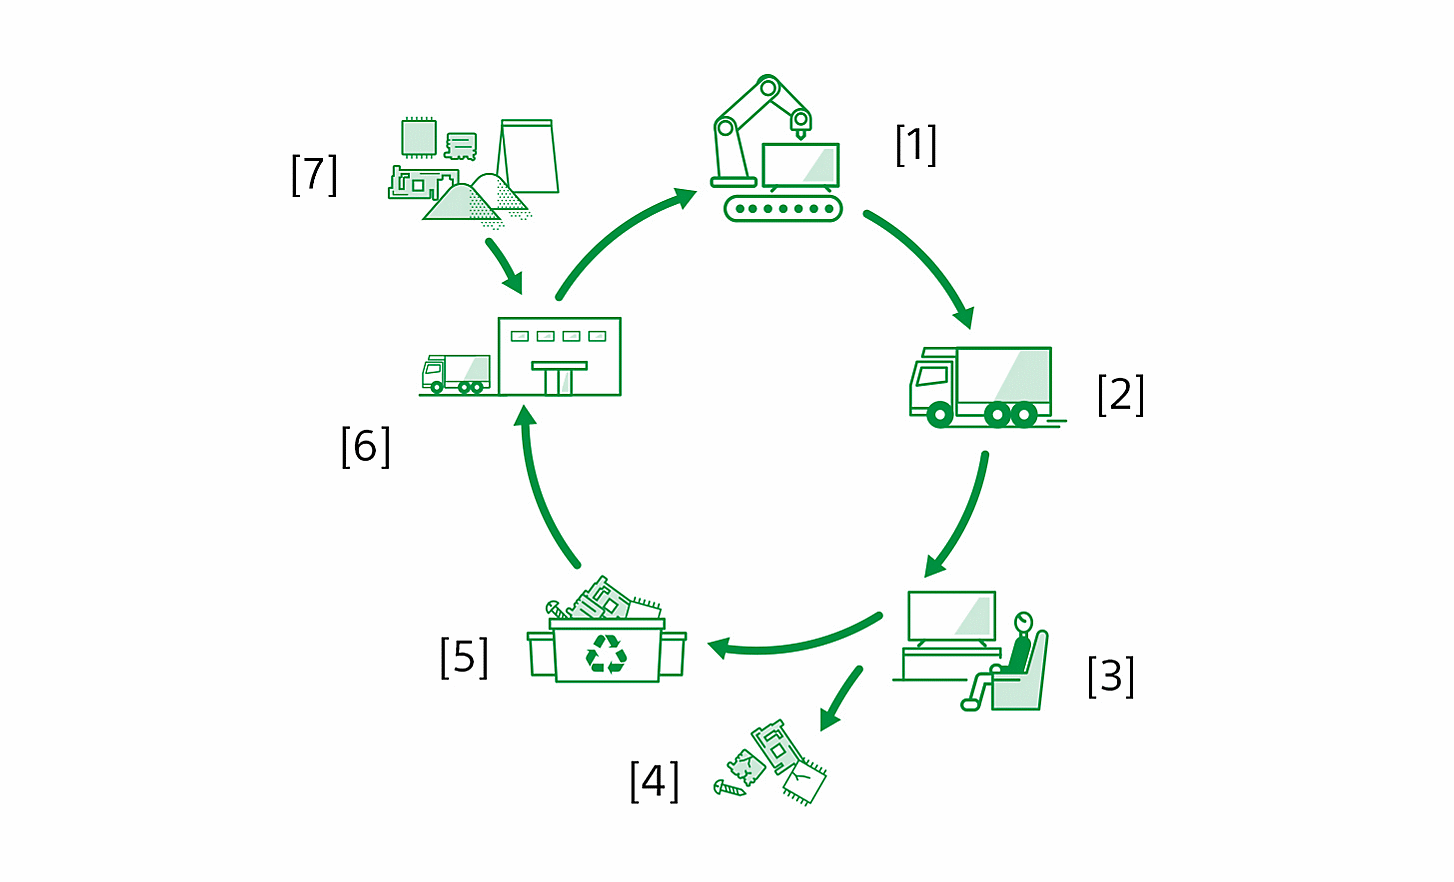 Diagramă prezentând ciclul de viață al unui produs, de la producție la reciclarea materialelor, cu etichetele: [1] Fabricarea produselor în unitățile de producție [2] Logistică [3] Utilizarea produselor de către clienți [4] Extragerea resurselor și eliminare [5] Unități de reciclare [6] Fabricarea pieselor de către furnizori [7] Extragerea resurselor